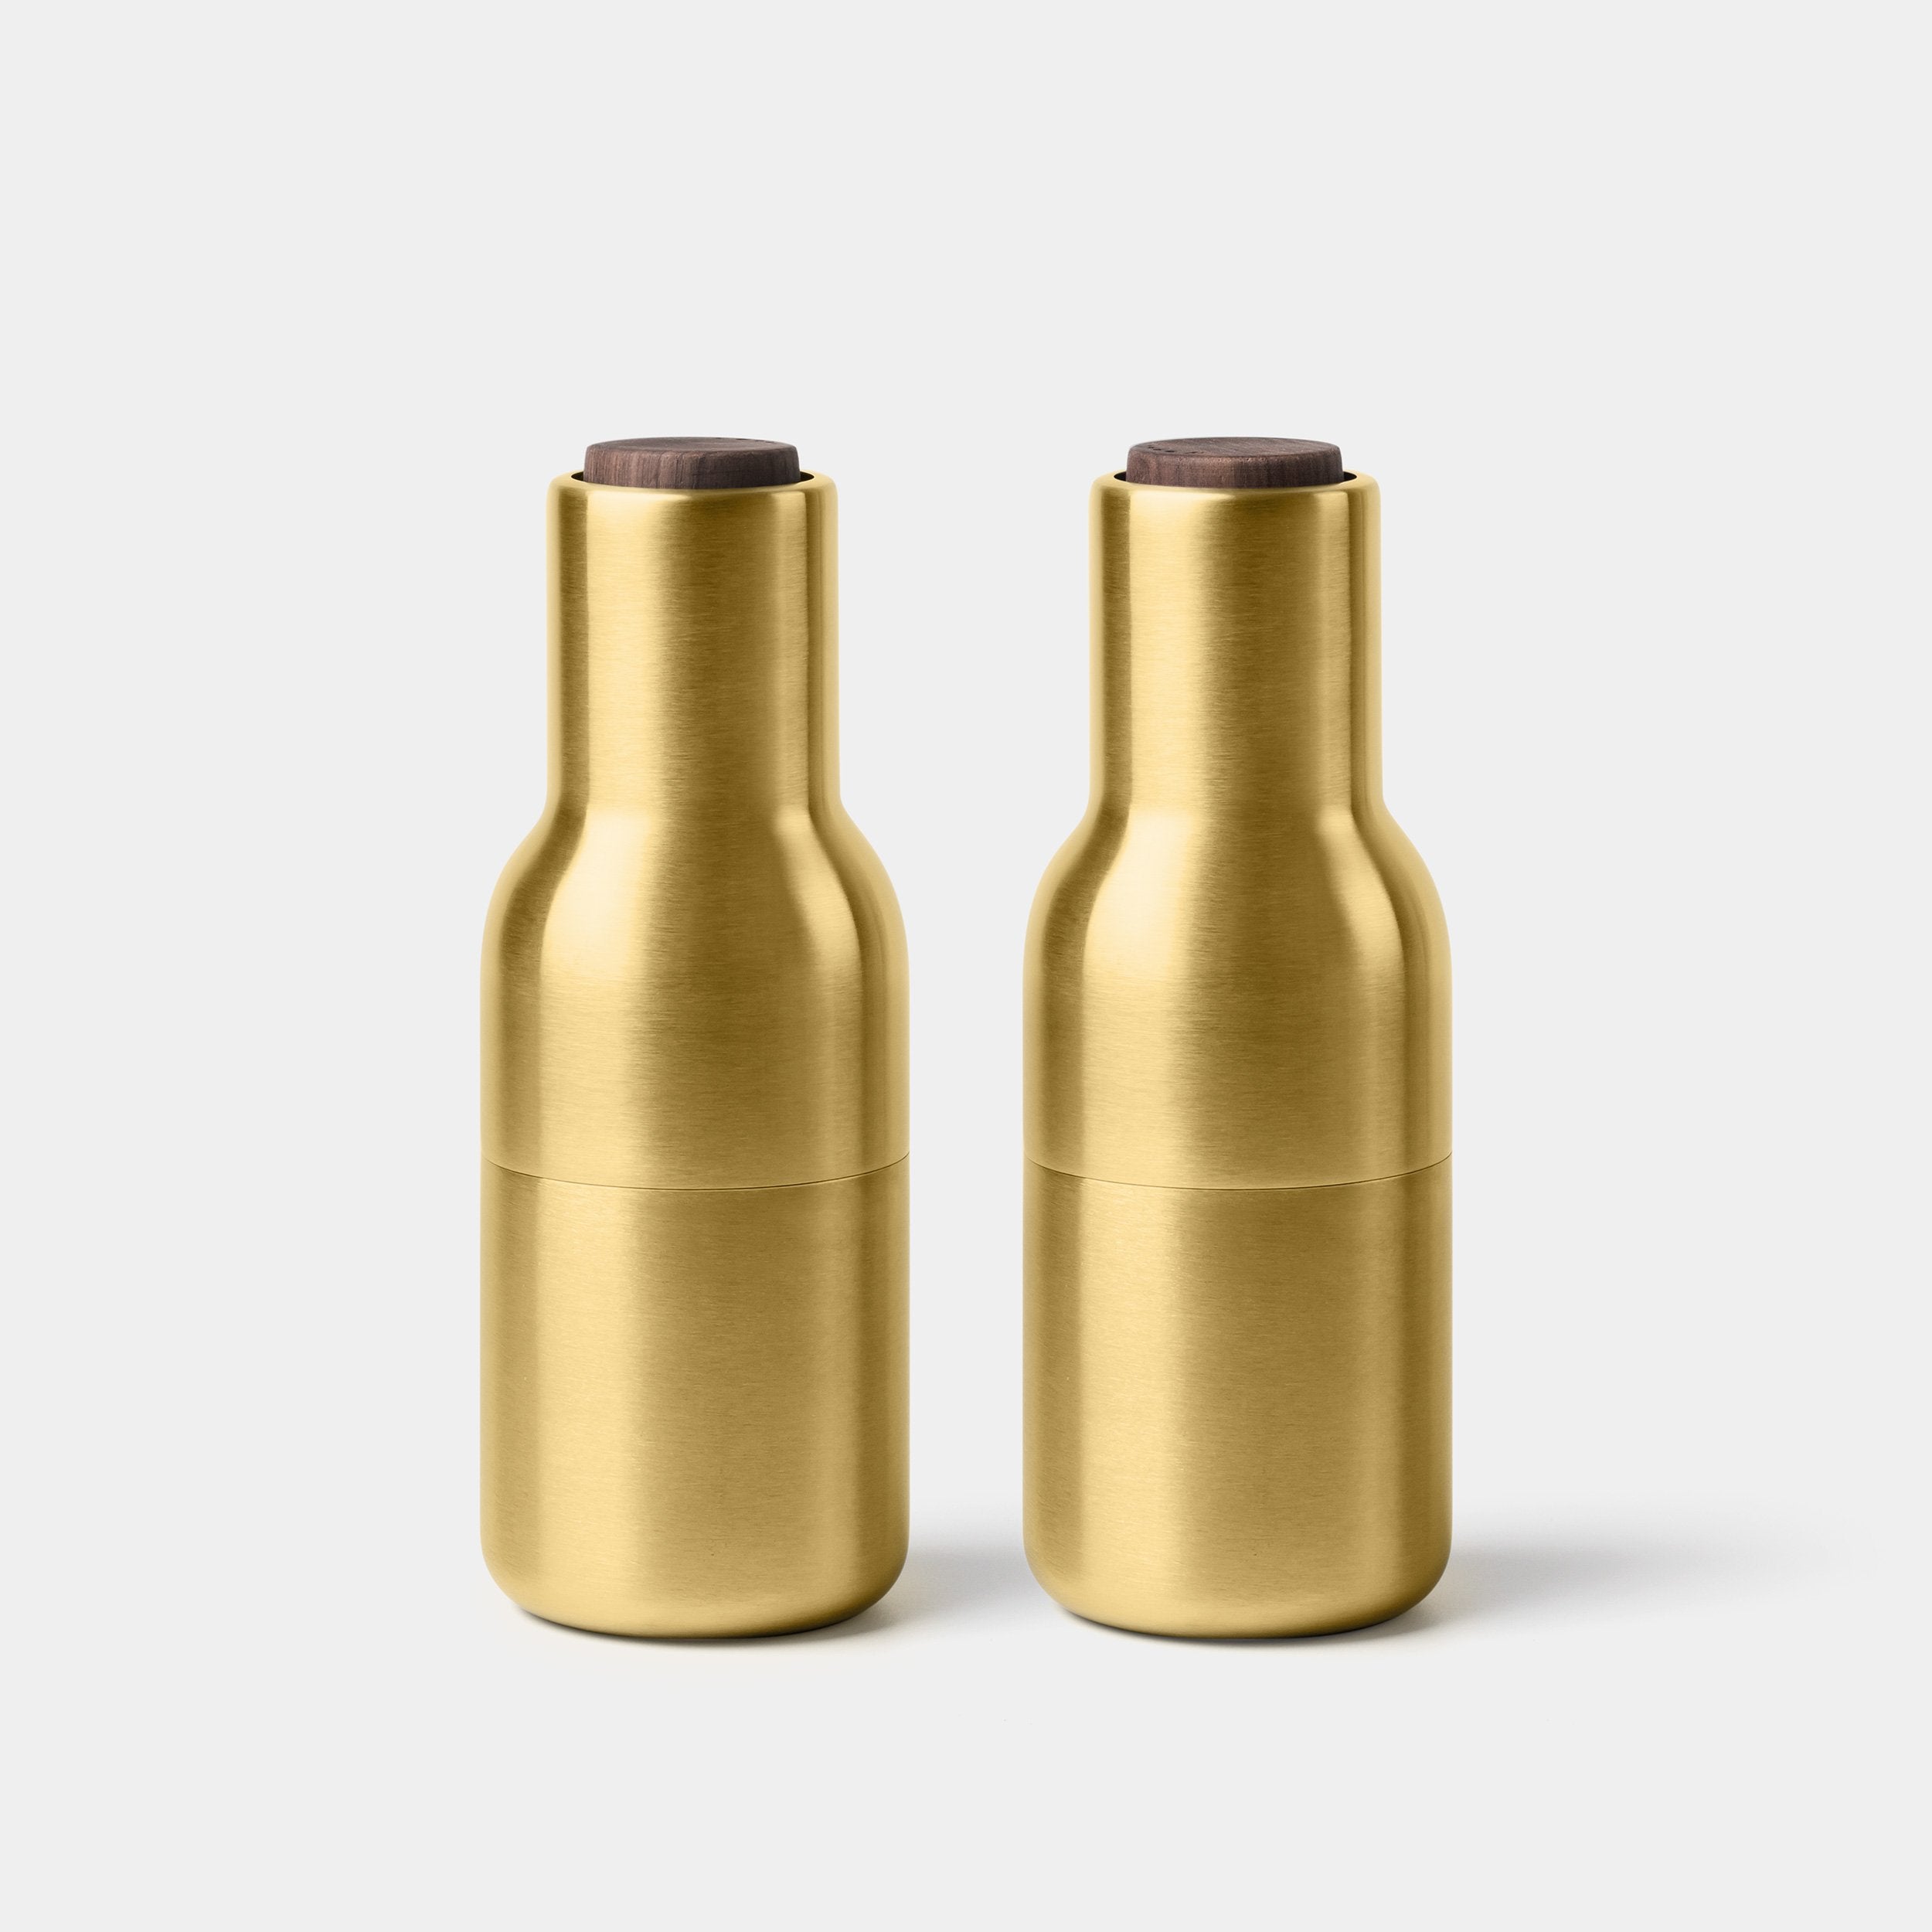 Menu Bottle Grinder – Brushed Brass with Walnut Lid